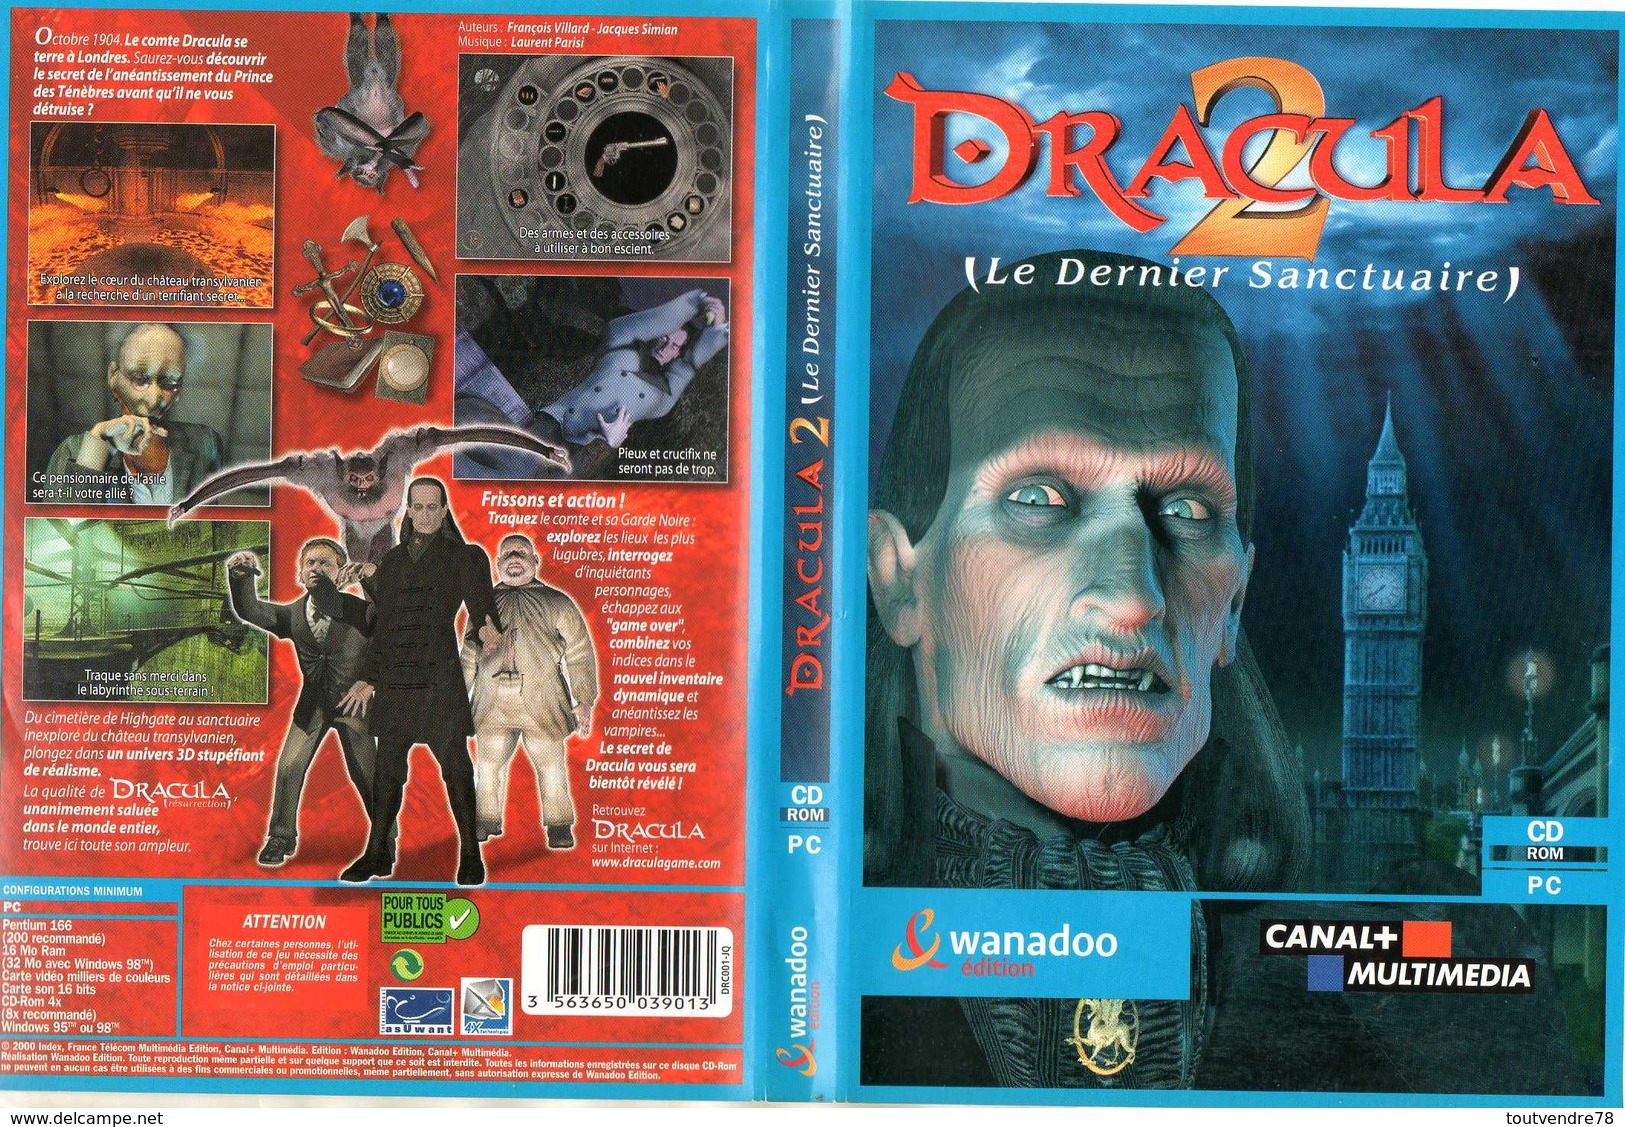 PC06 : Jeu PC "Dracula 2" Le Dernier Sanctuaire - Jeux PC